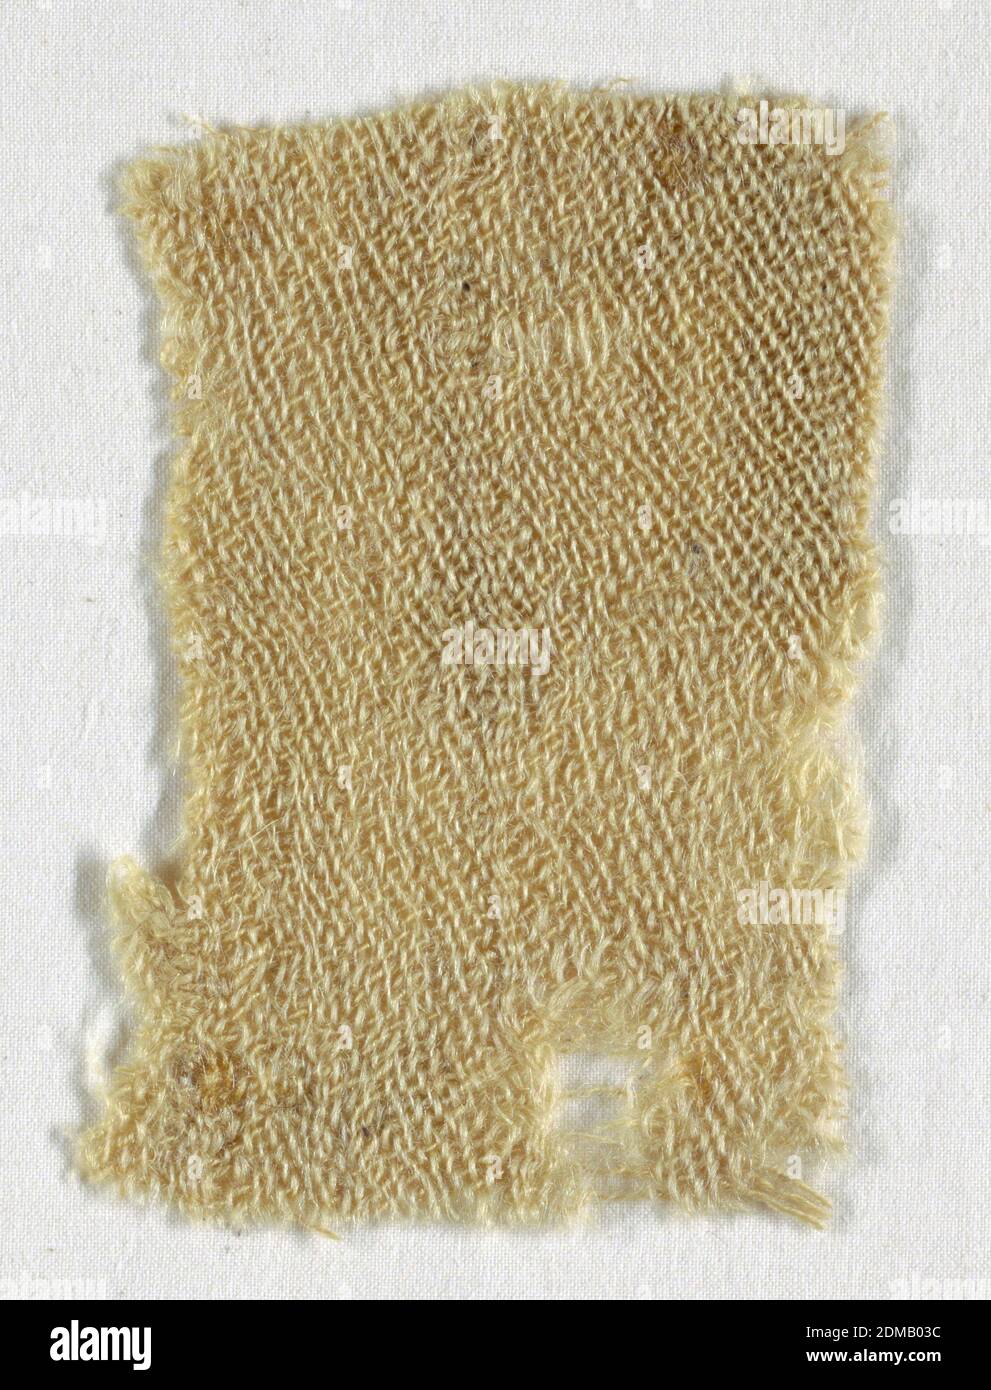 Fragment, Medium: Wolle Technik: Schussstoff 2-1 Twill, etwas locker,  unregelmäßiger Schussstoff in ungefärbter Wolle (eng S-gesponnene Kettchen;  ungedrehte Schussstoffe)., Ägypten, 3.–4. Jahrhundert, gewebte Textilien,  Fragment Stockfotografie - Alamy